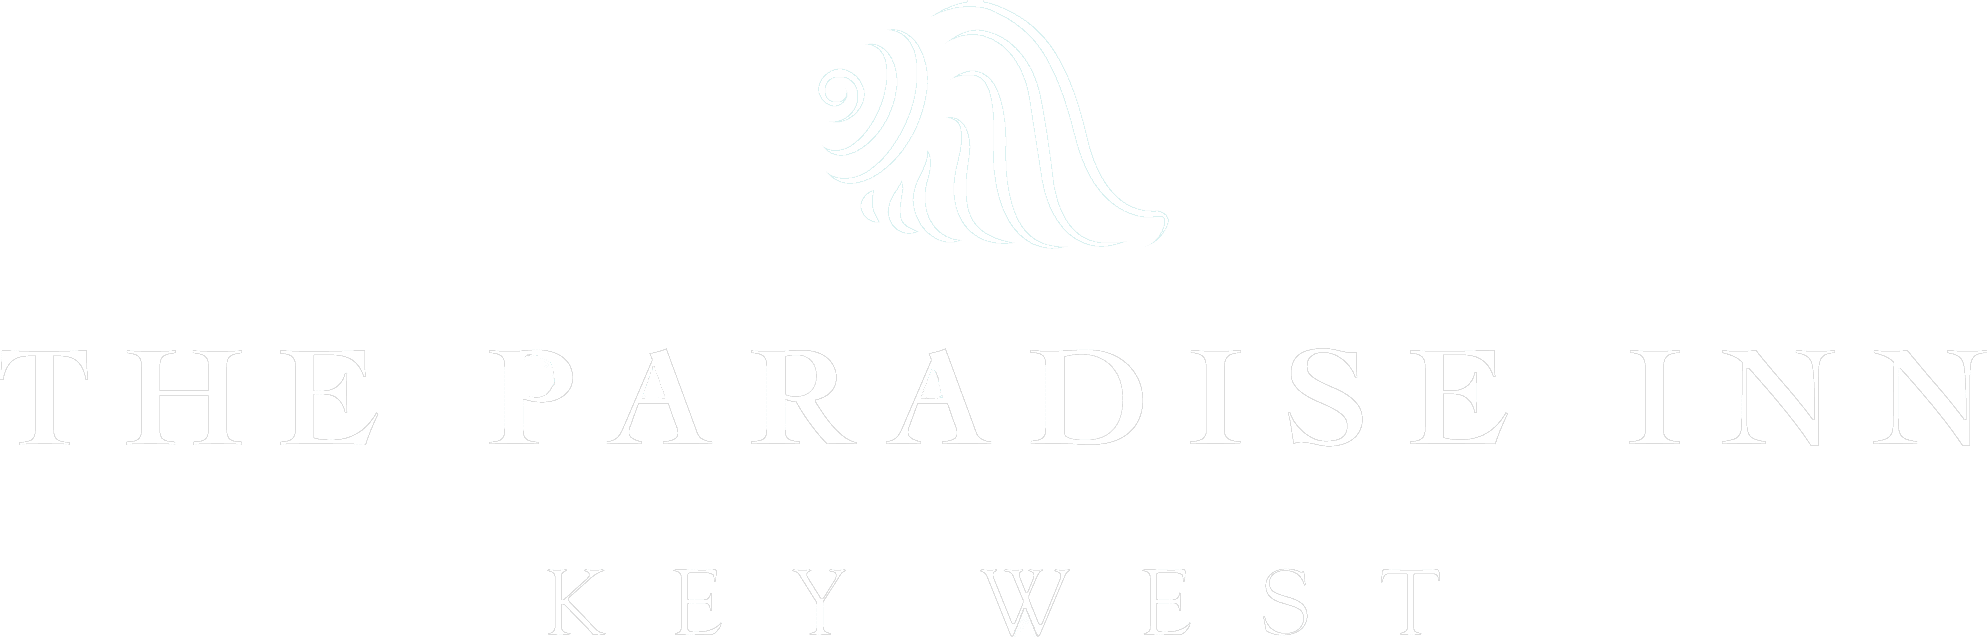 The Paradise Inn logo.